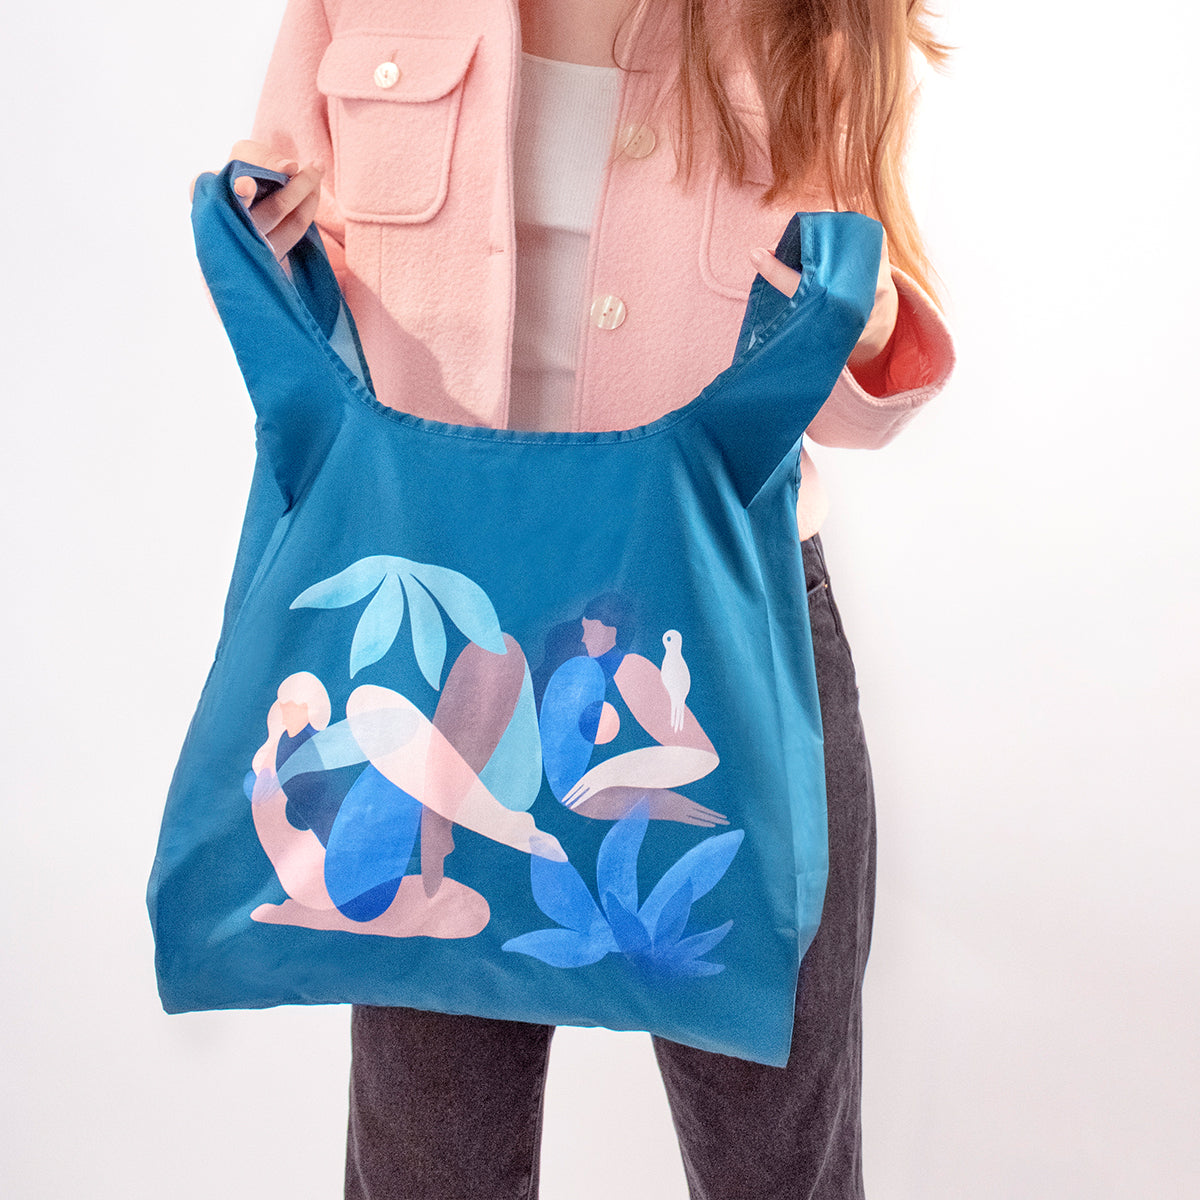 Shopper bag made of 100% rescued plastic bottles